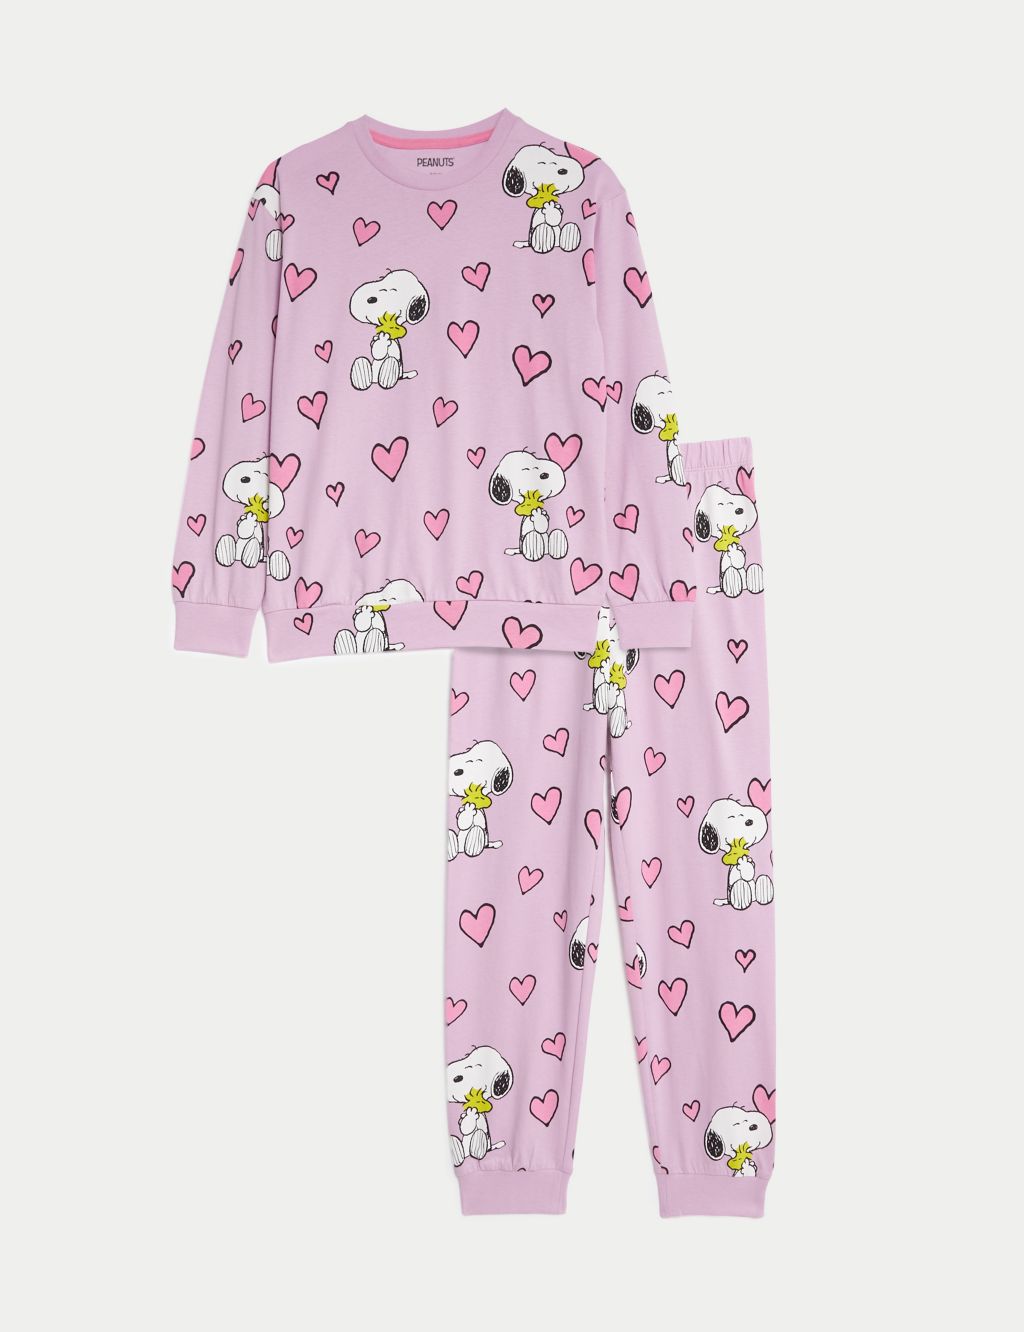 Snoopy™ Pyjamas (6-16 Yrs) image 2